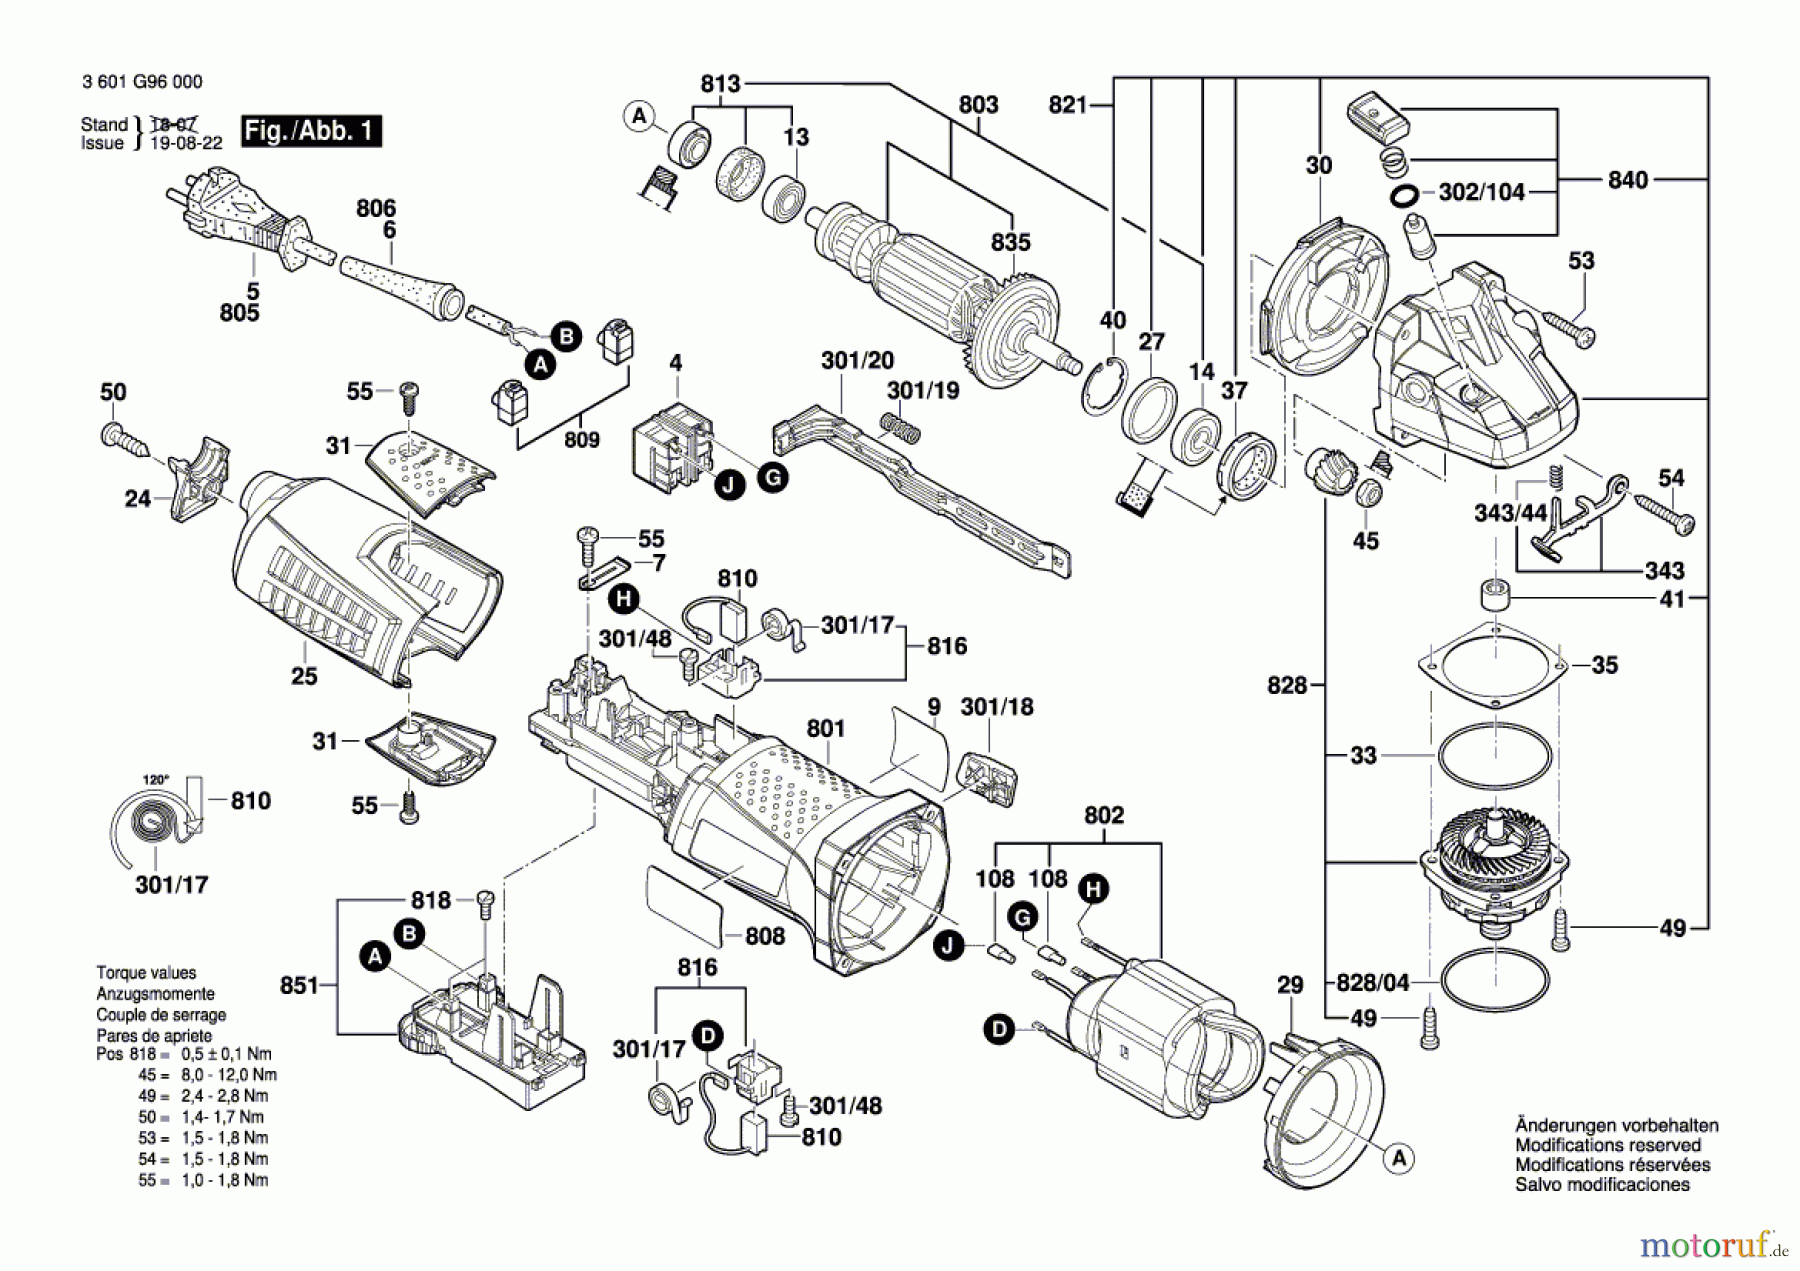  Bosch Werkzeug Winkelschleifer GWS 15-125 CIT Seite 1